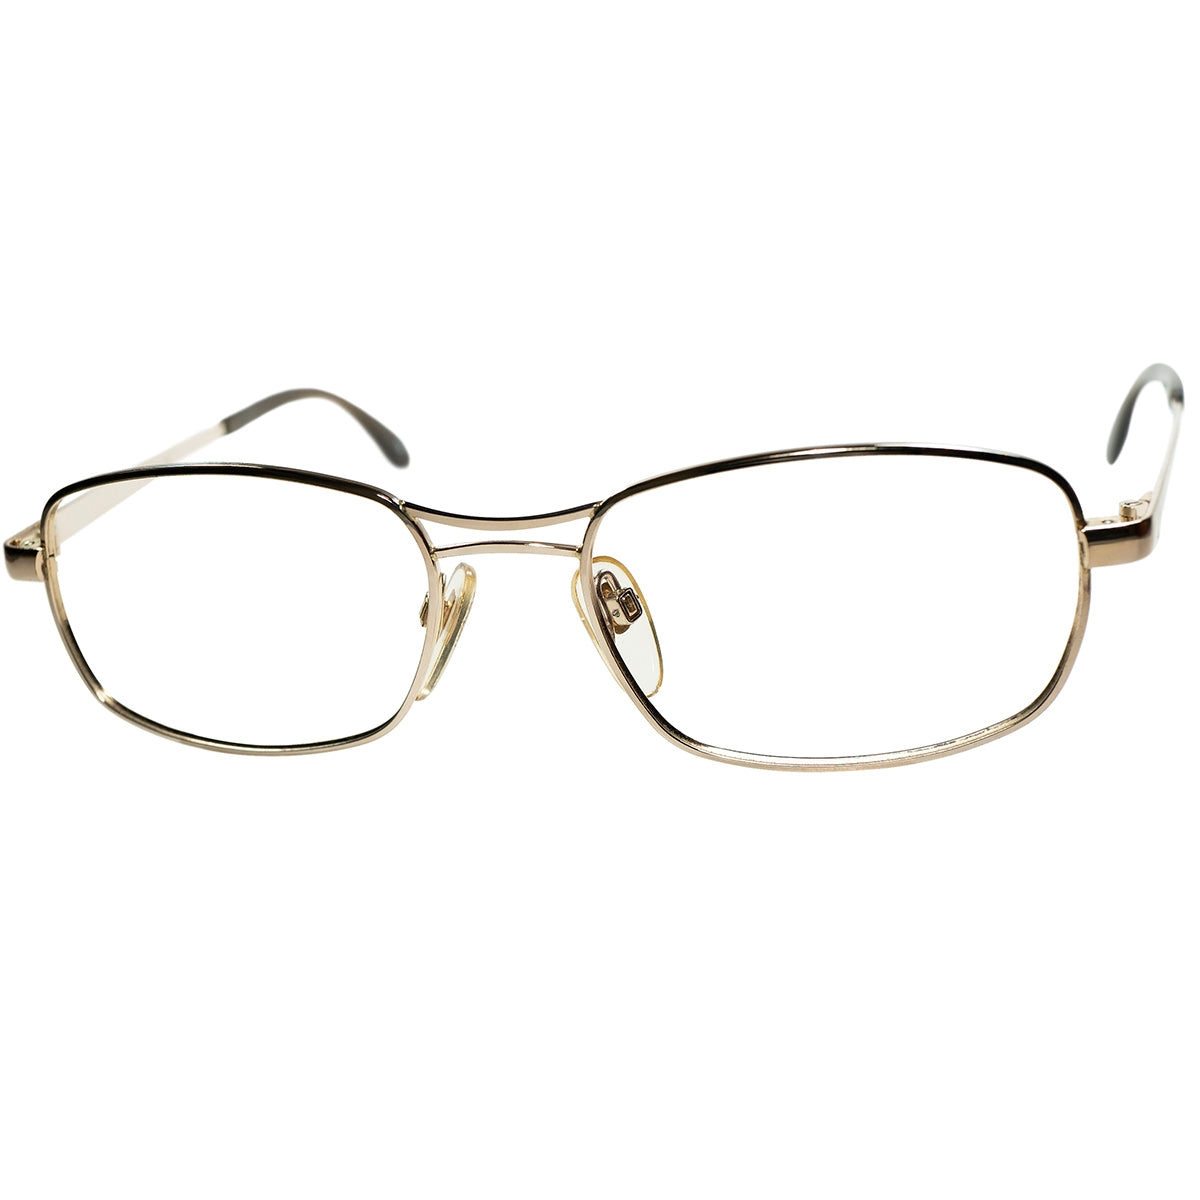 眼鏡としての段違いのポテンシャルの高さ 1960-70sデッドストック 